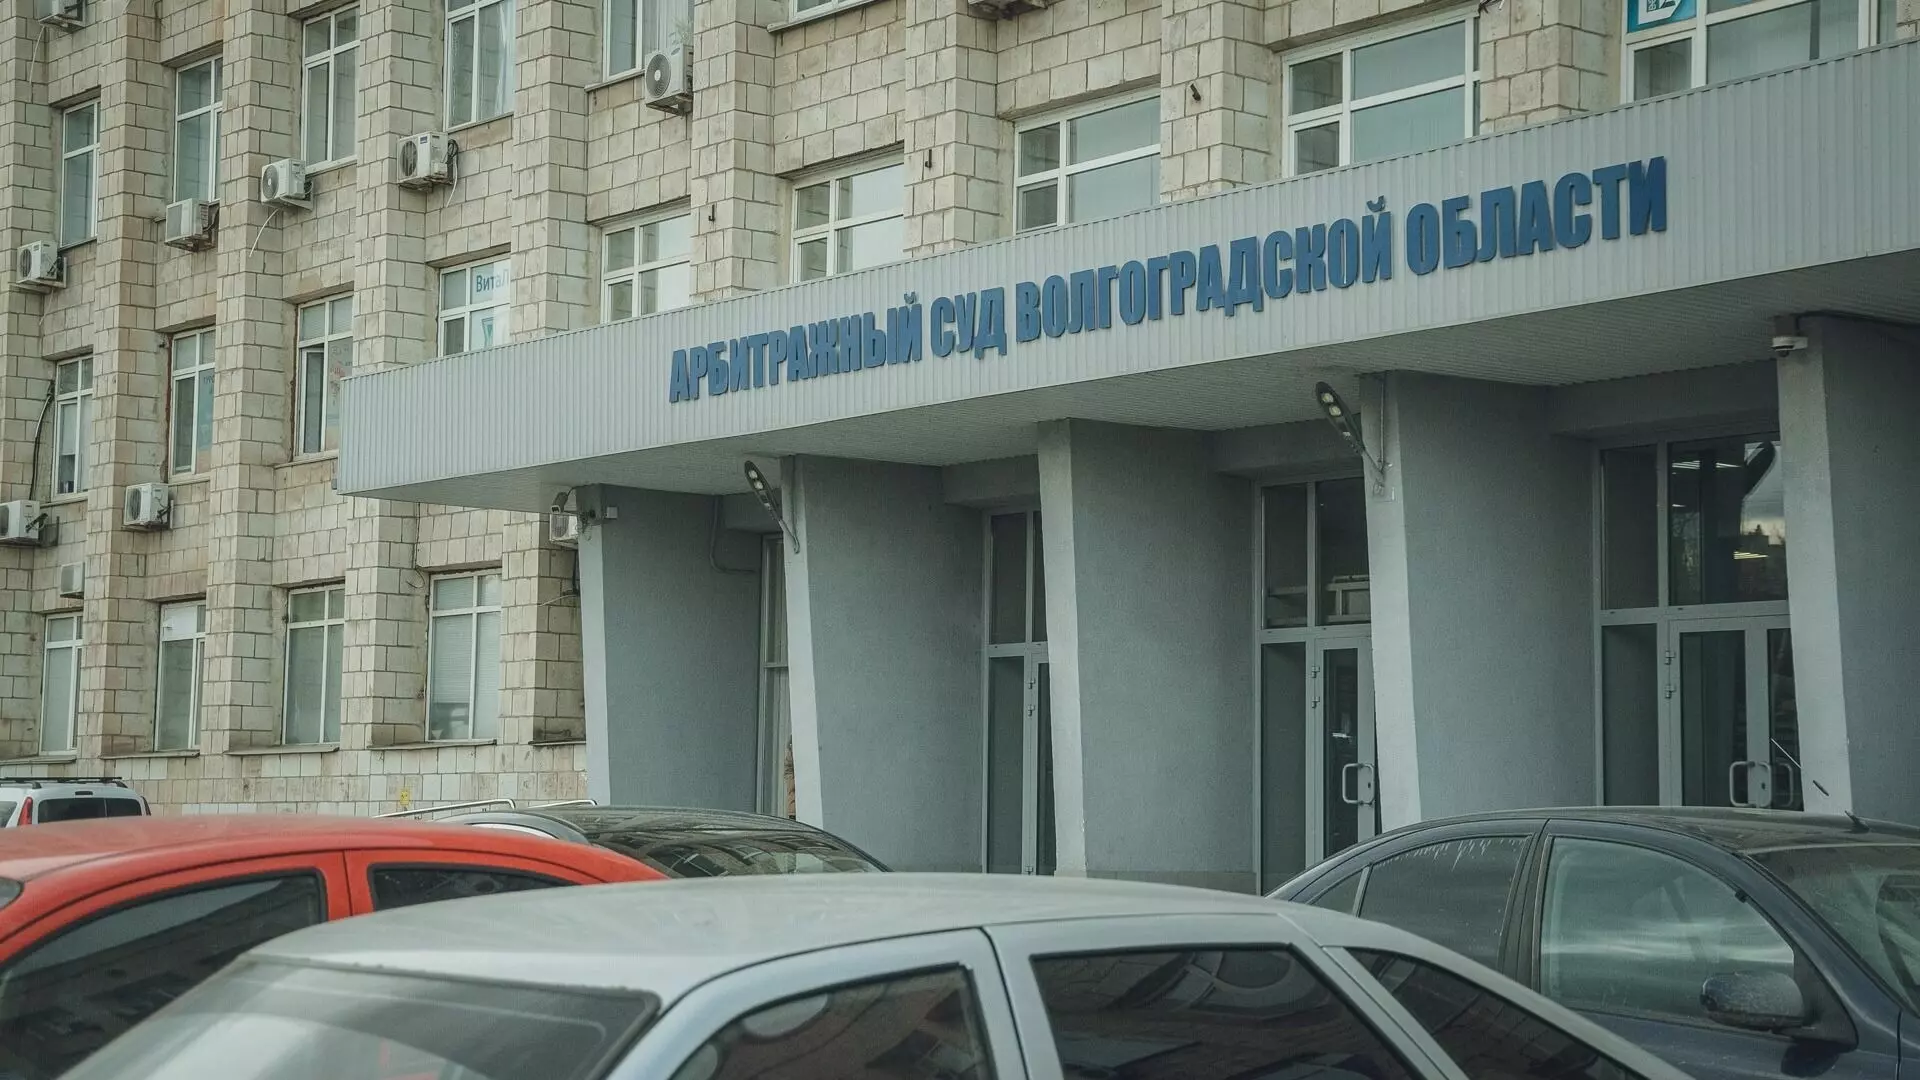 Арбитражный суд Волгоградской области рассмотрел в январе несколько громких дел